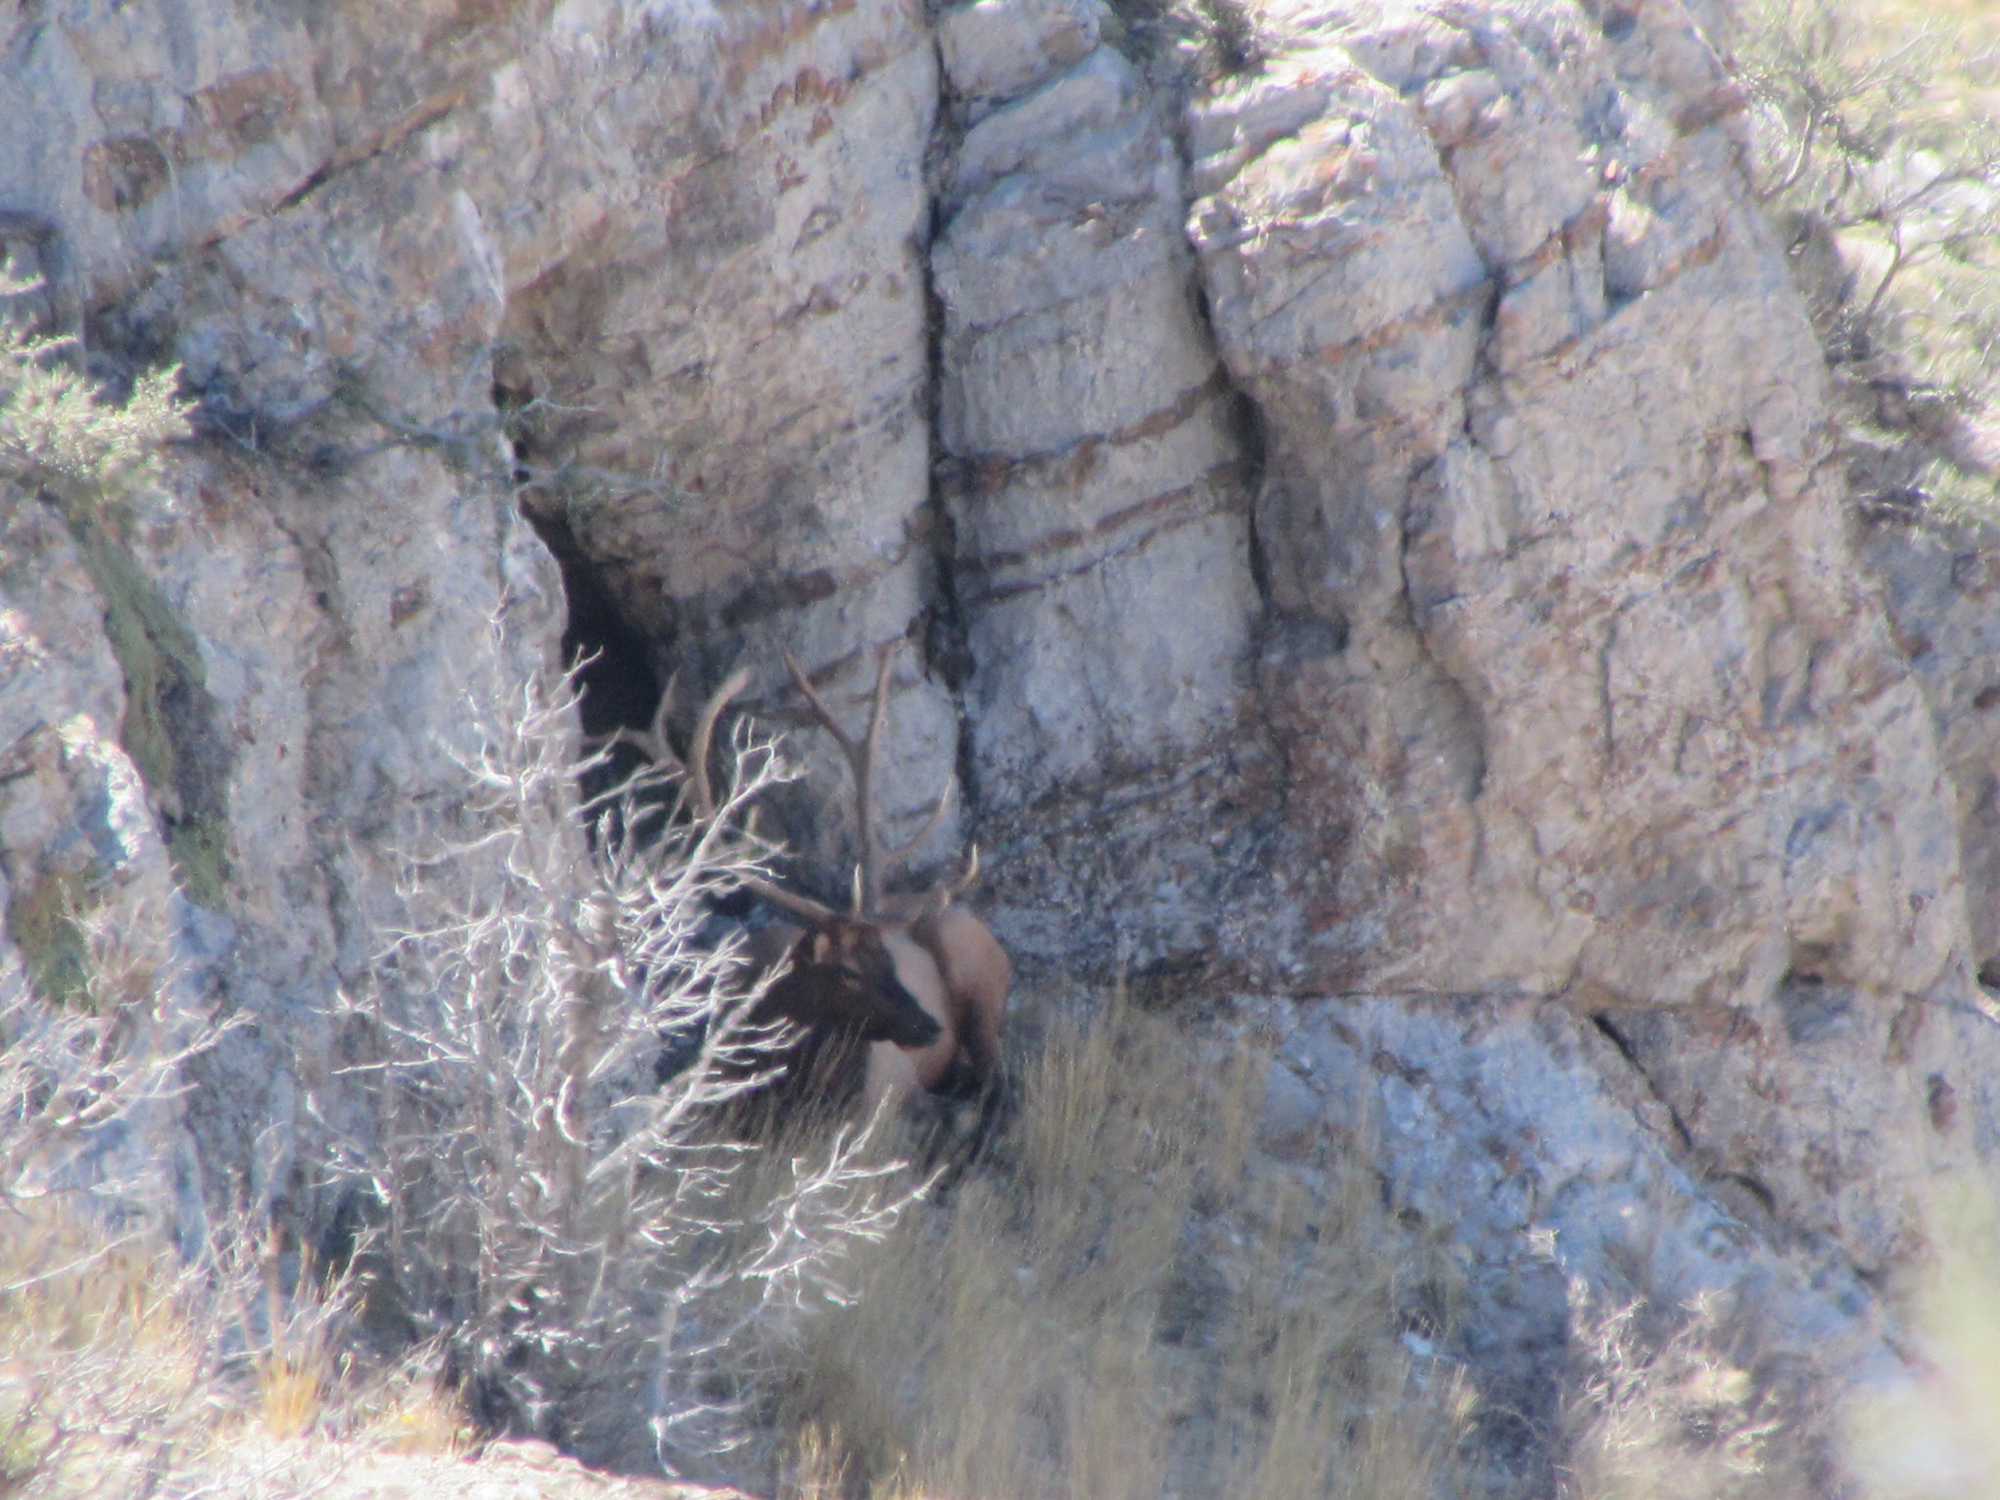 An elk in a dry habitat.